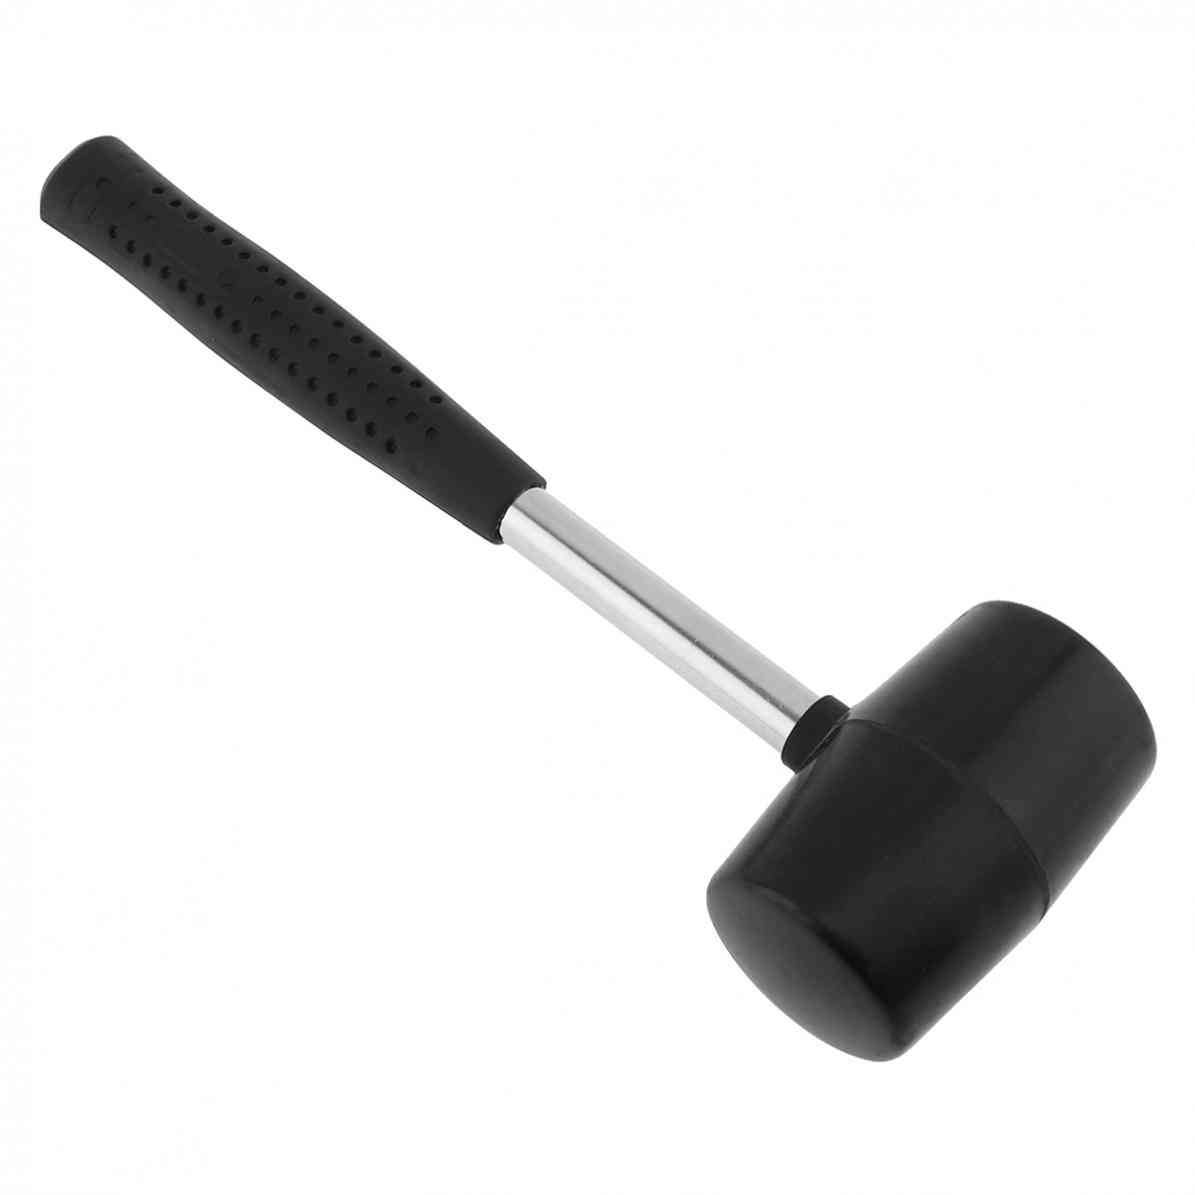 Gomma non elastica, resistente all'usura, martello per piastrelle con testa tonda, utensile manuale per impugnatura